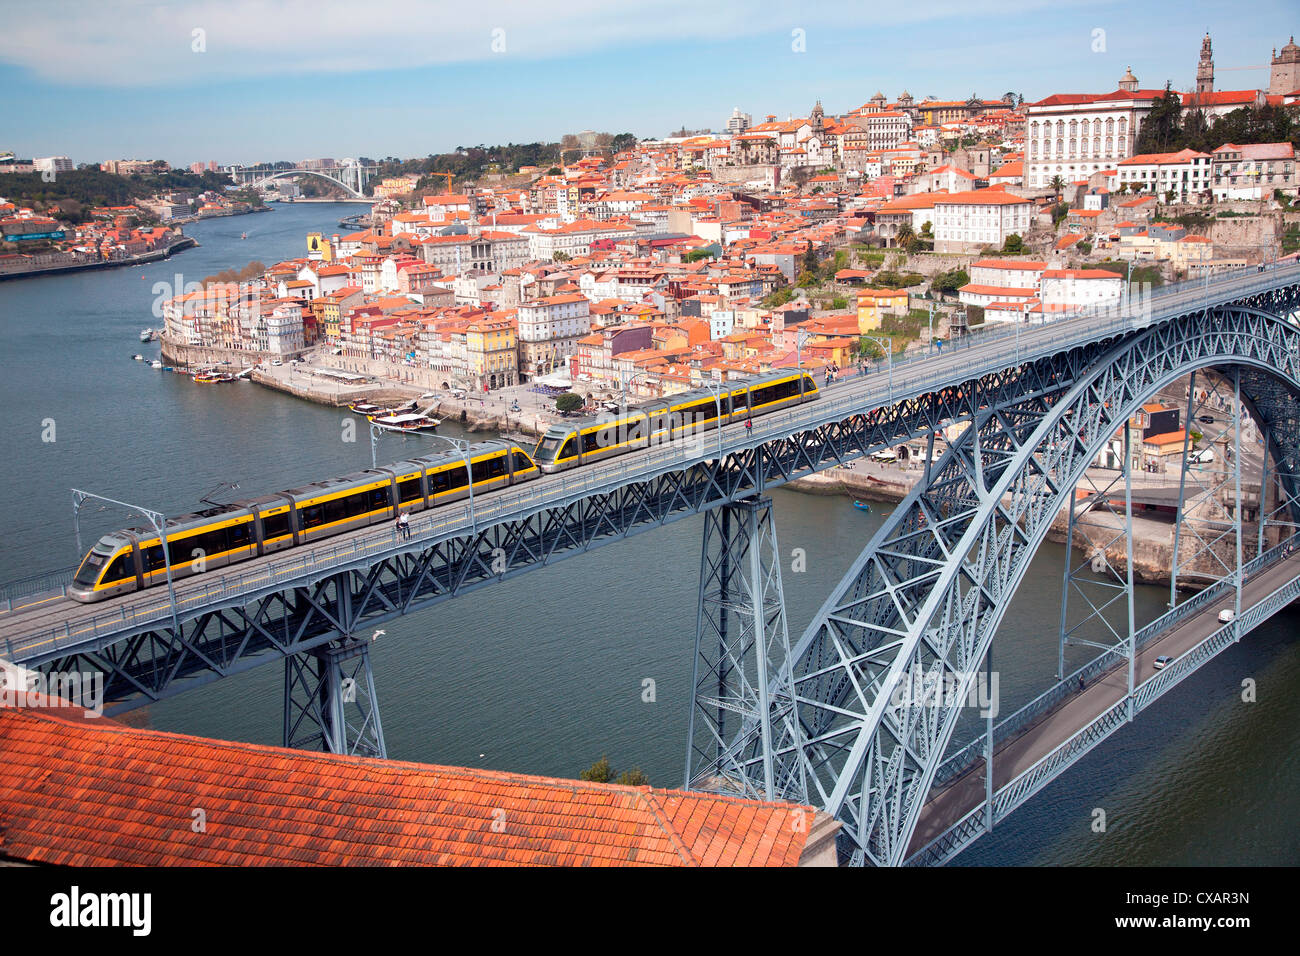 The Dom Luis 1 Bridge over the River Douro showing Metro light rail in transit and Arrabida Bridge in background, Porto (Oporto) Stock Photo